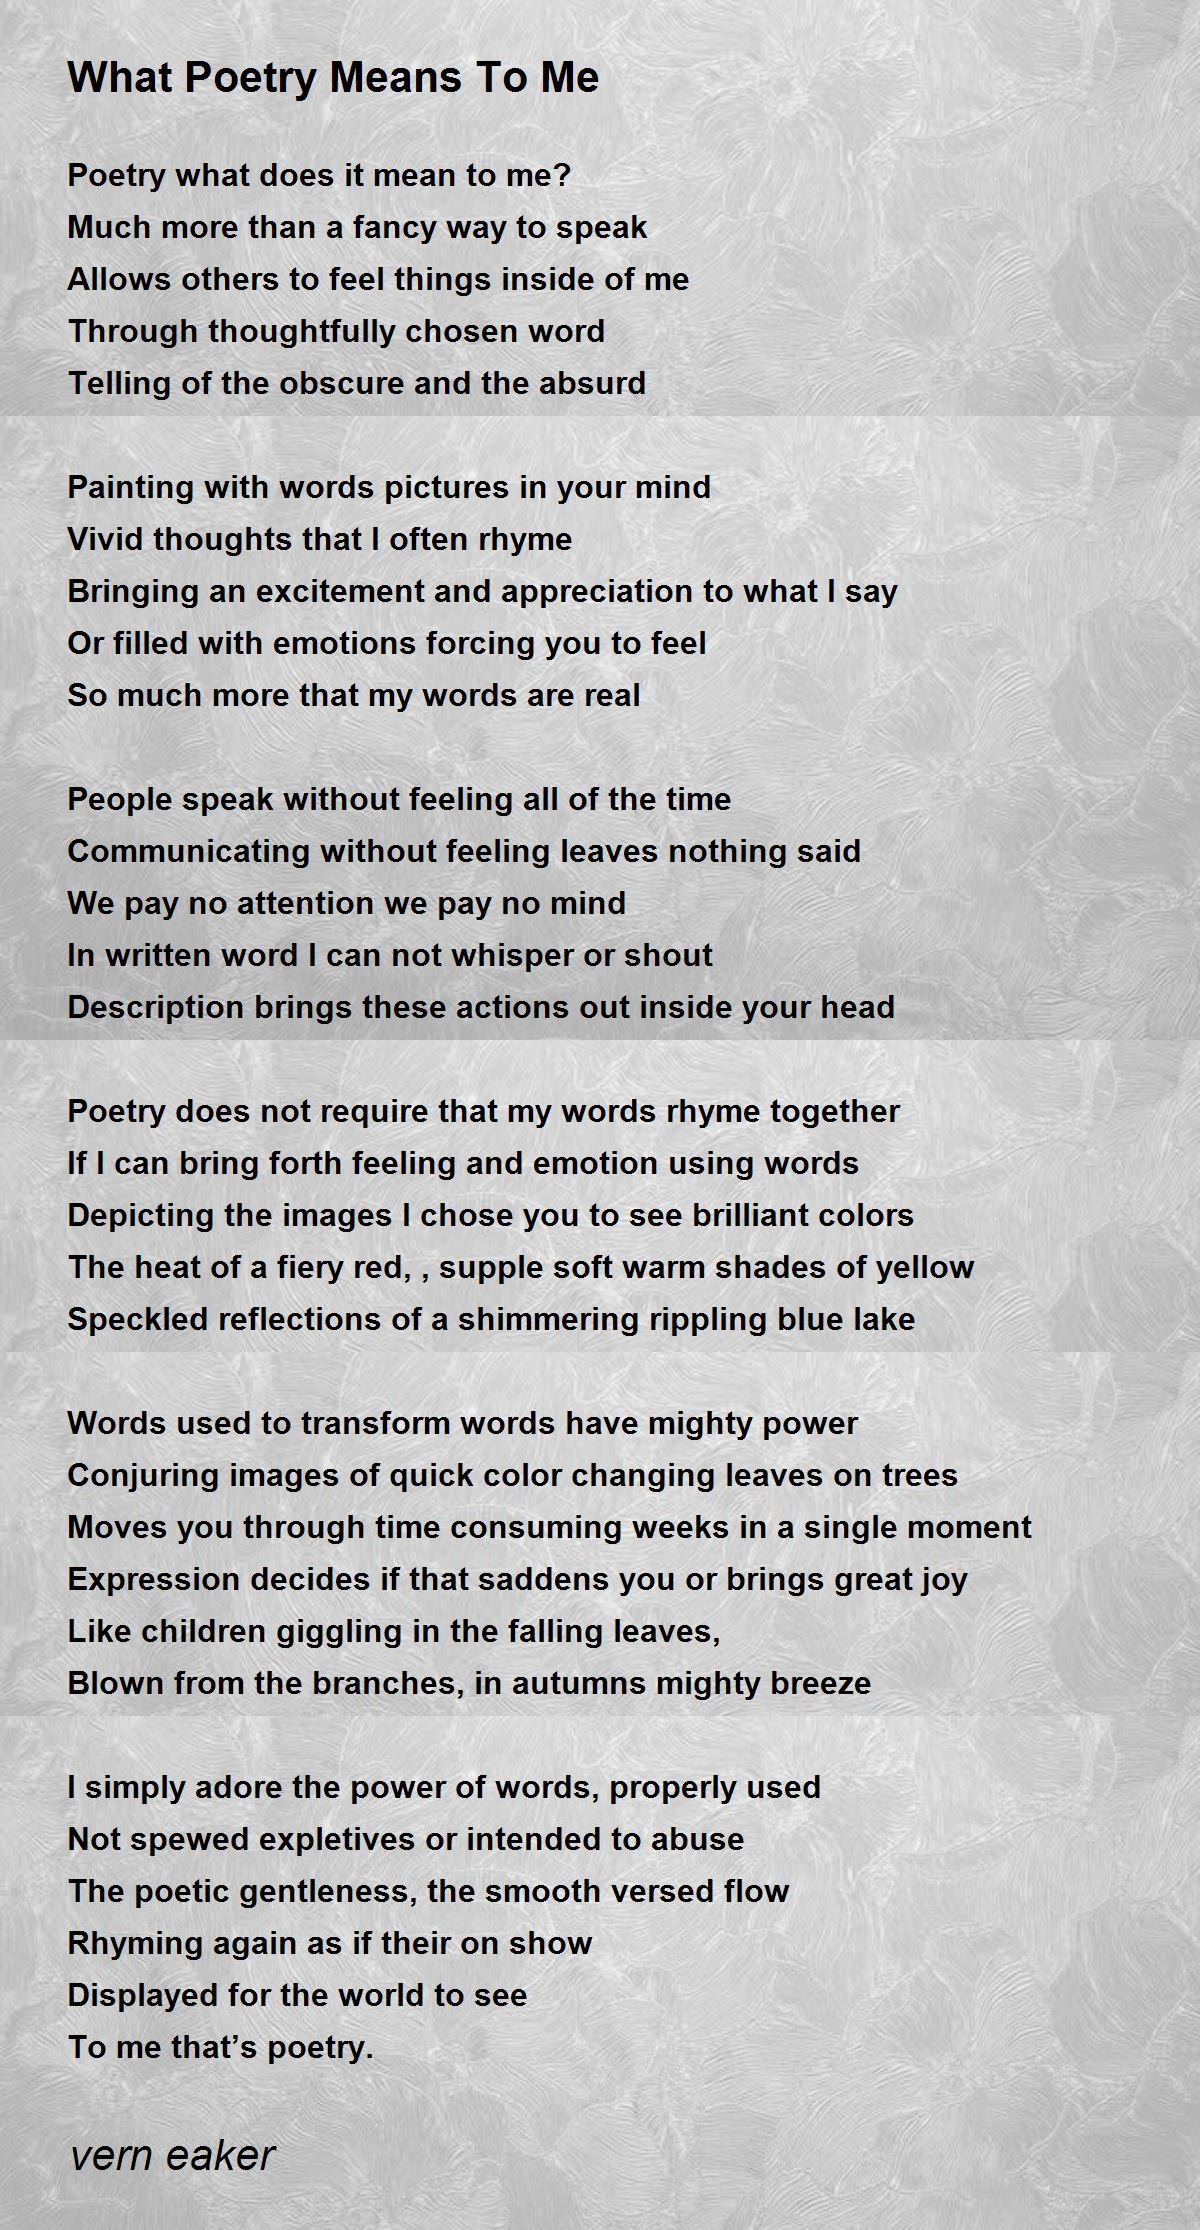 What Poetry Means To Me - What Poetry Means To Me Poem by vern eaker